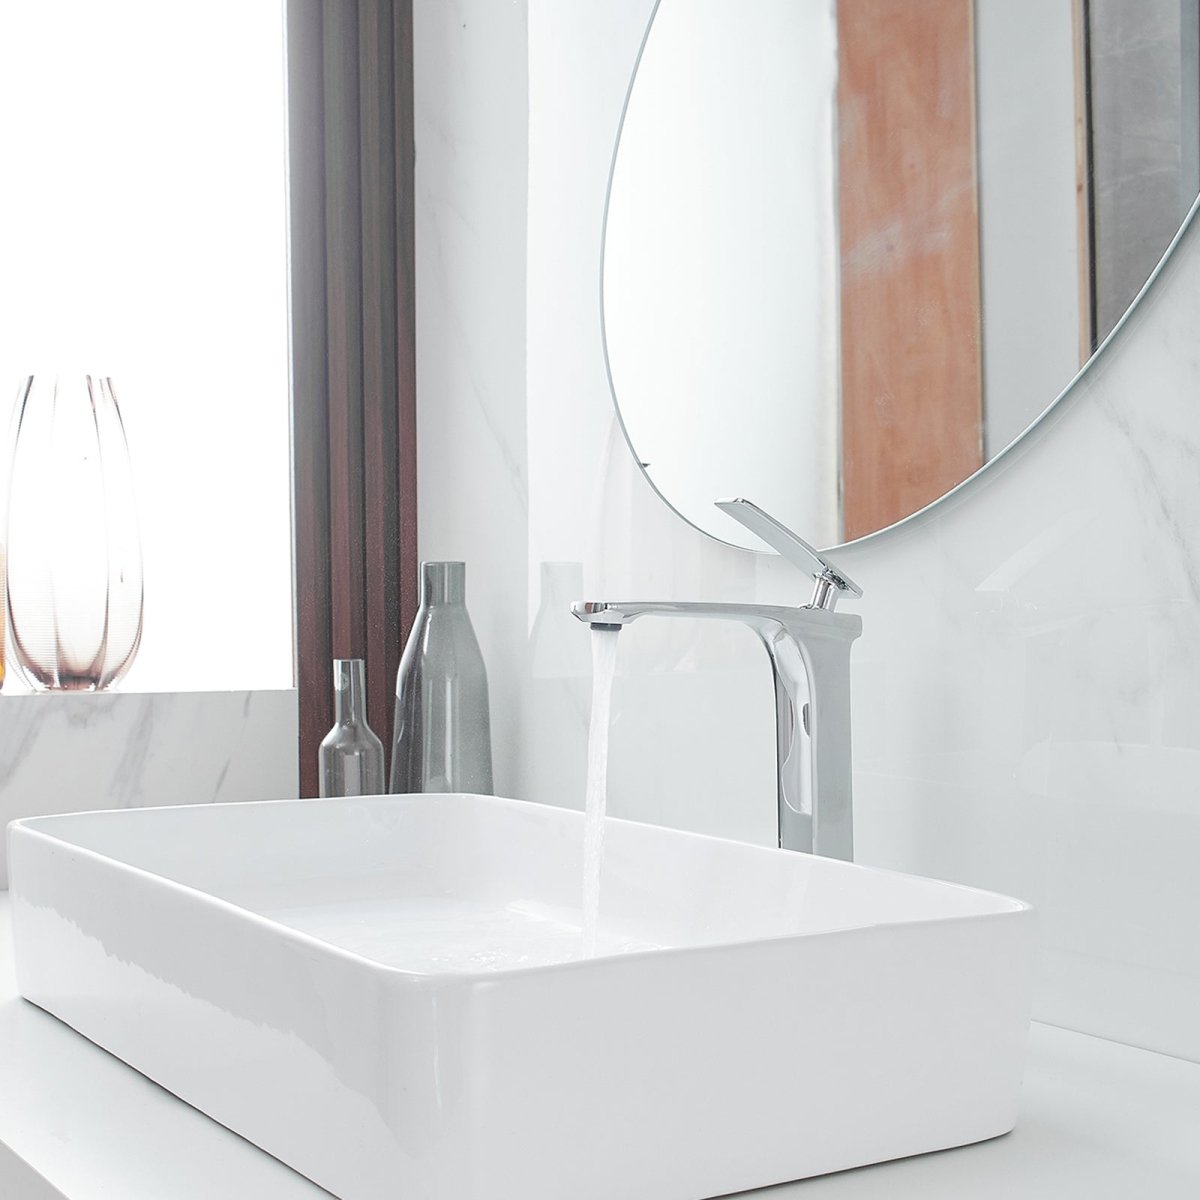 Single Handle without Overflow Vessel Bathroom Faucet Chrome - buyfaucet.com